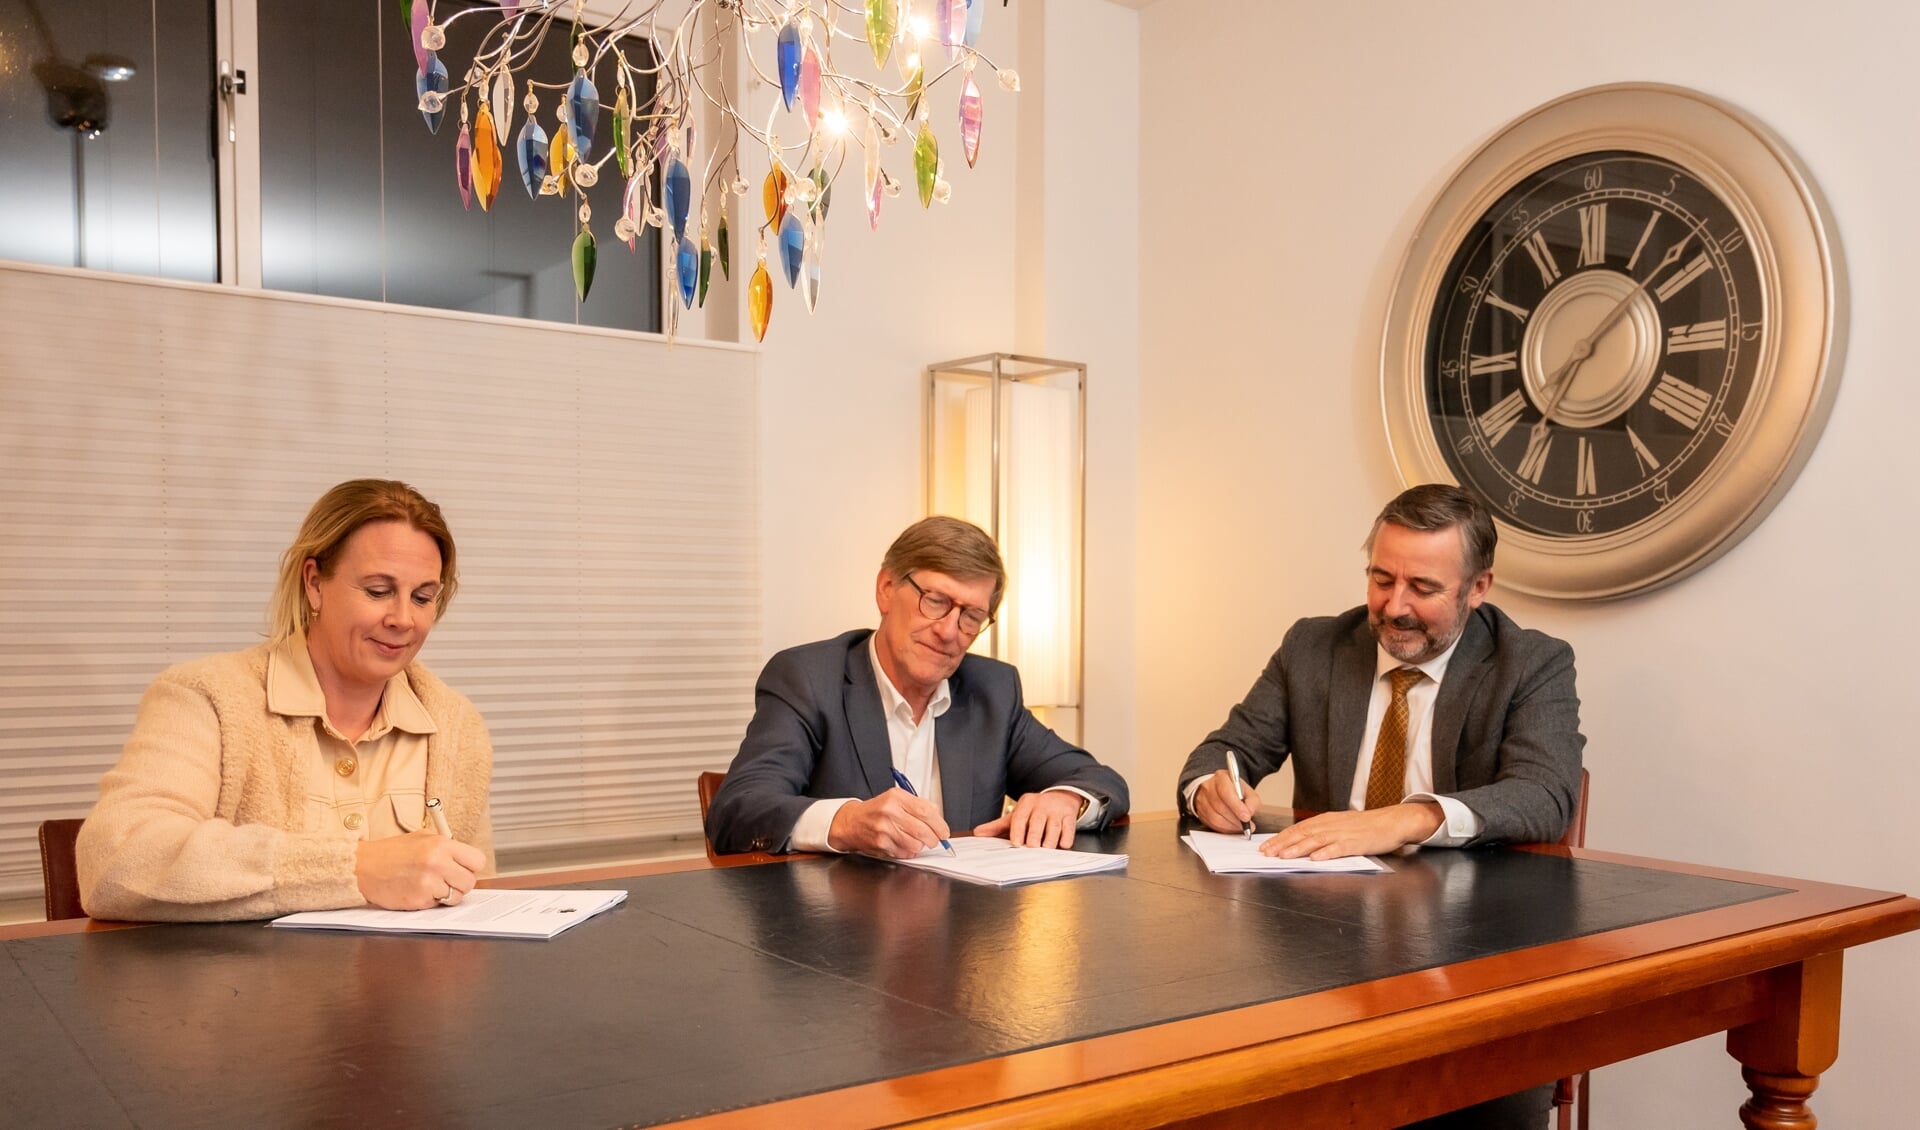 h  Kroes en Partners Notarissen & Adviseurs heeft Buller & Rijnbeek Notarissen overgenomen.